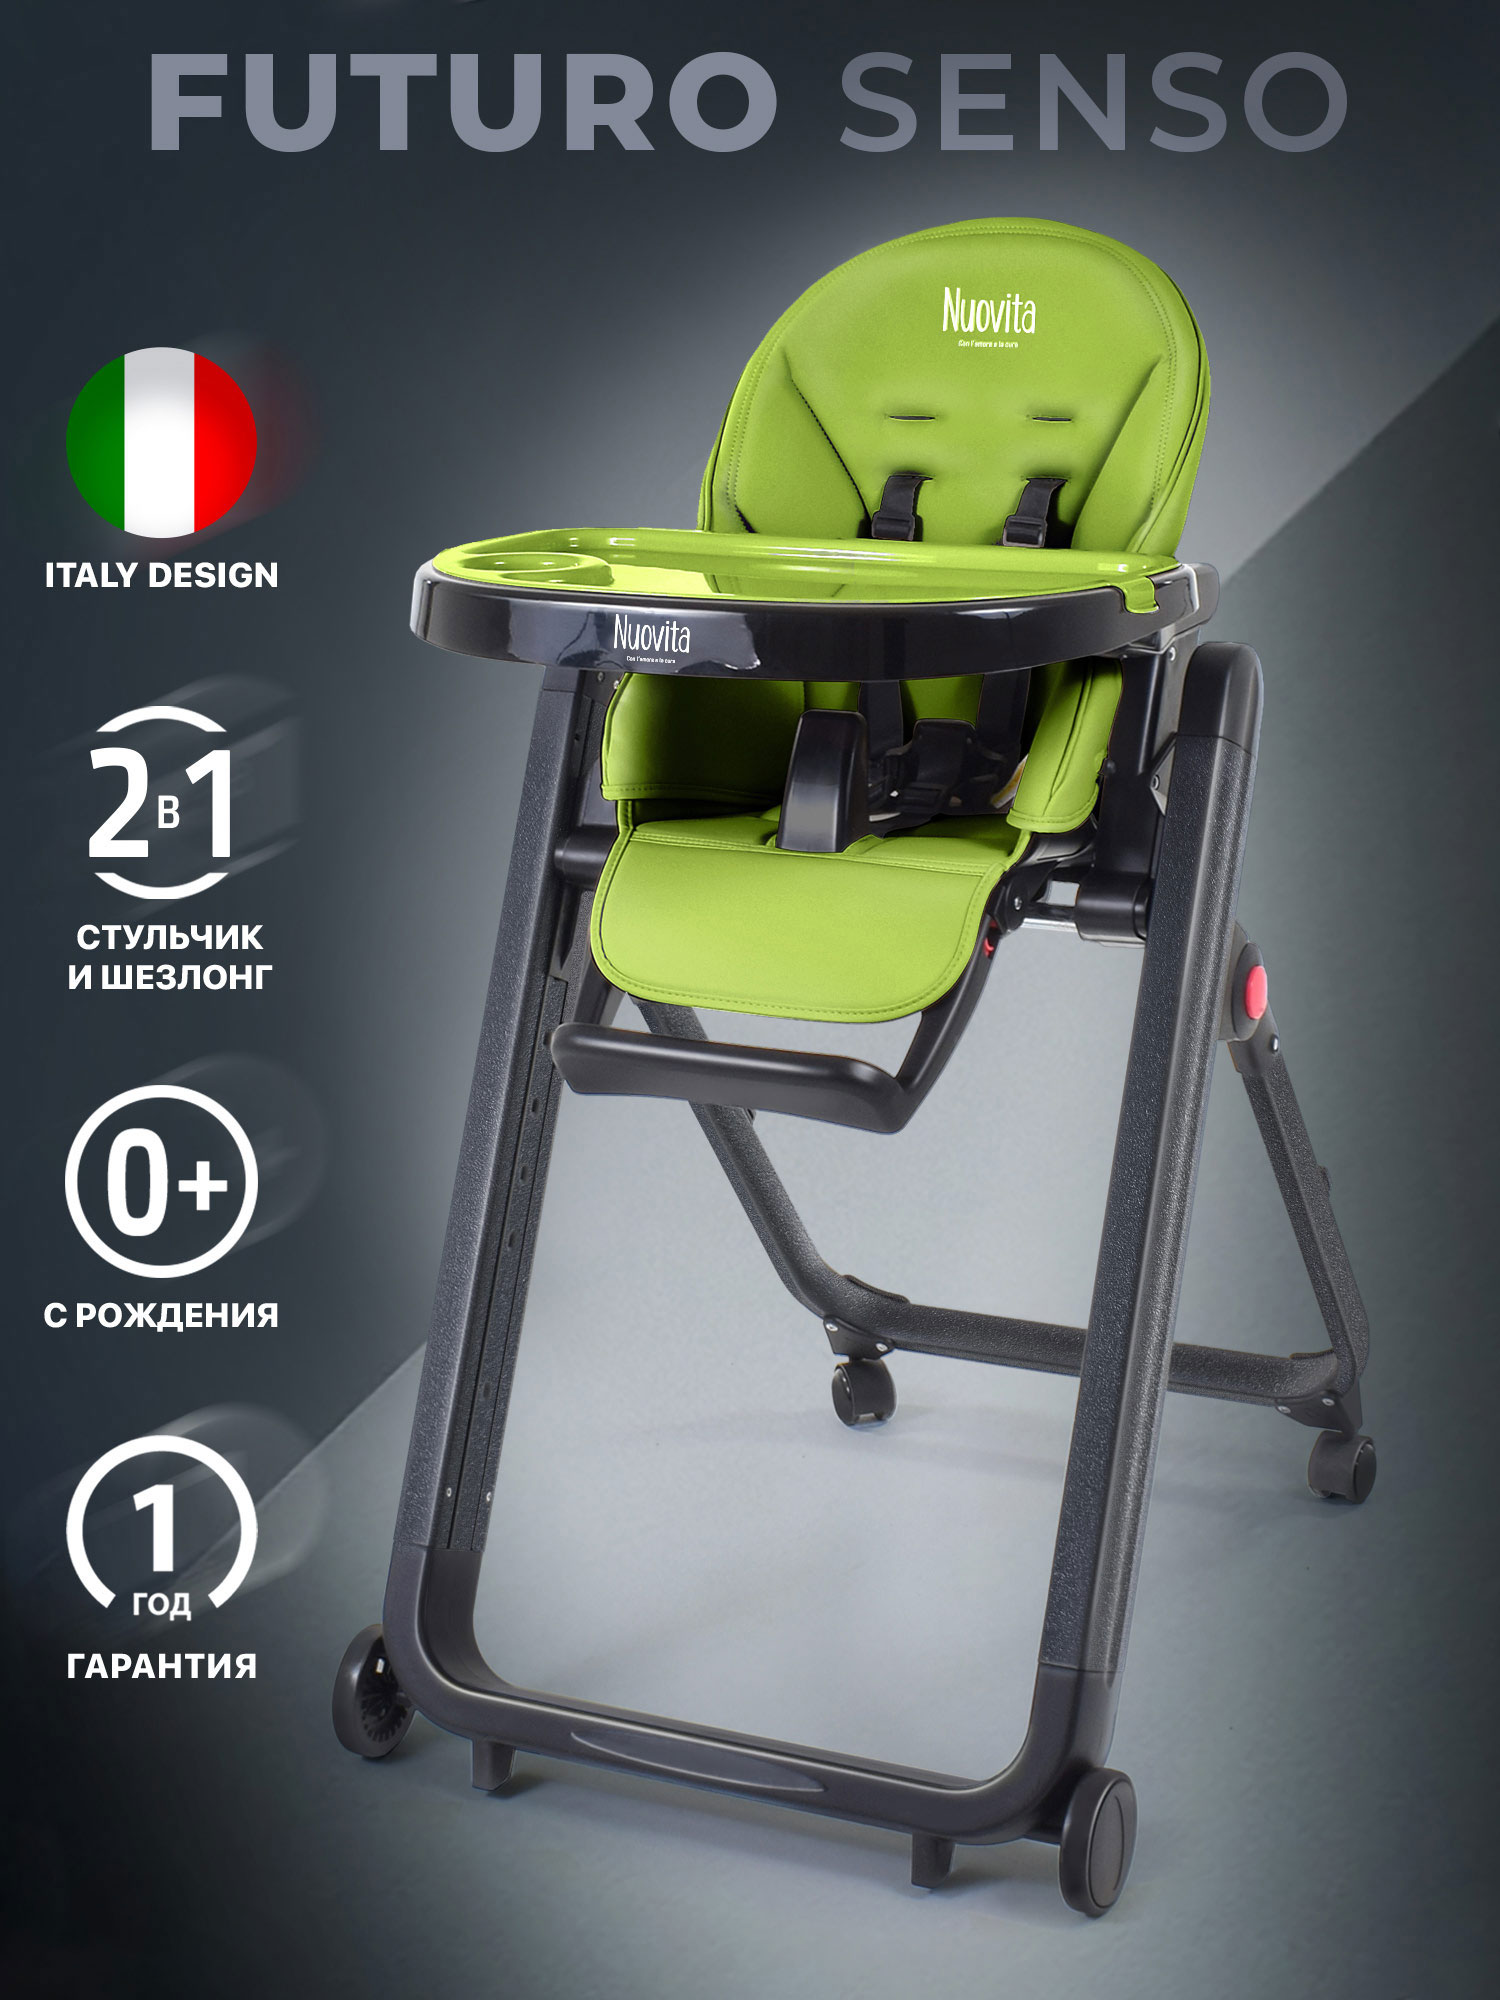 Стульчик для кормления Nuovita Futuro Senso Nero (Verde/Зеленый) стульчик для кормления nuovita futuro nero cosmo giallo желтый космос